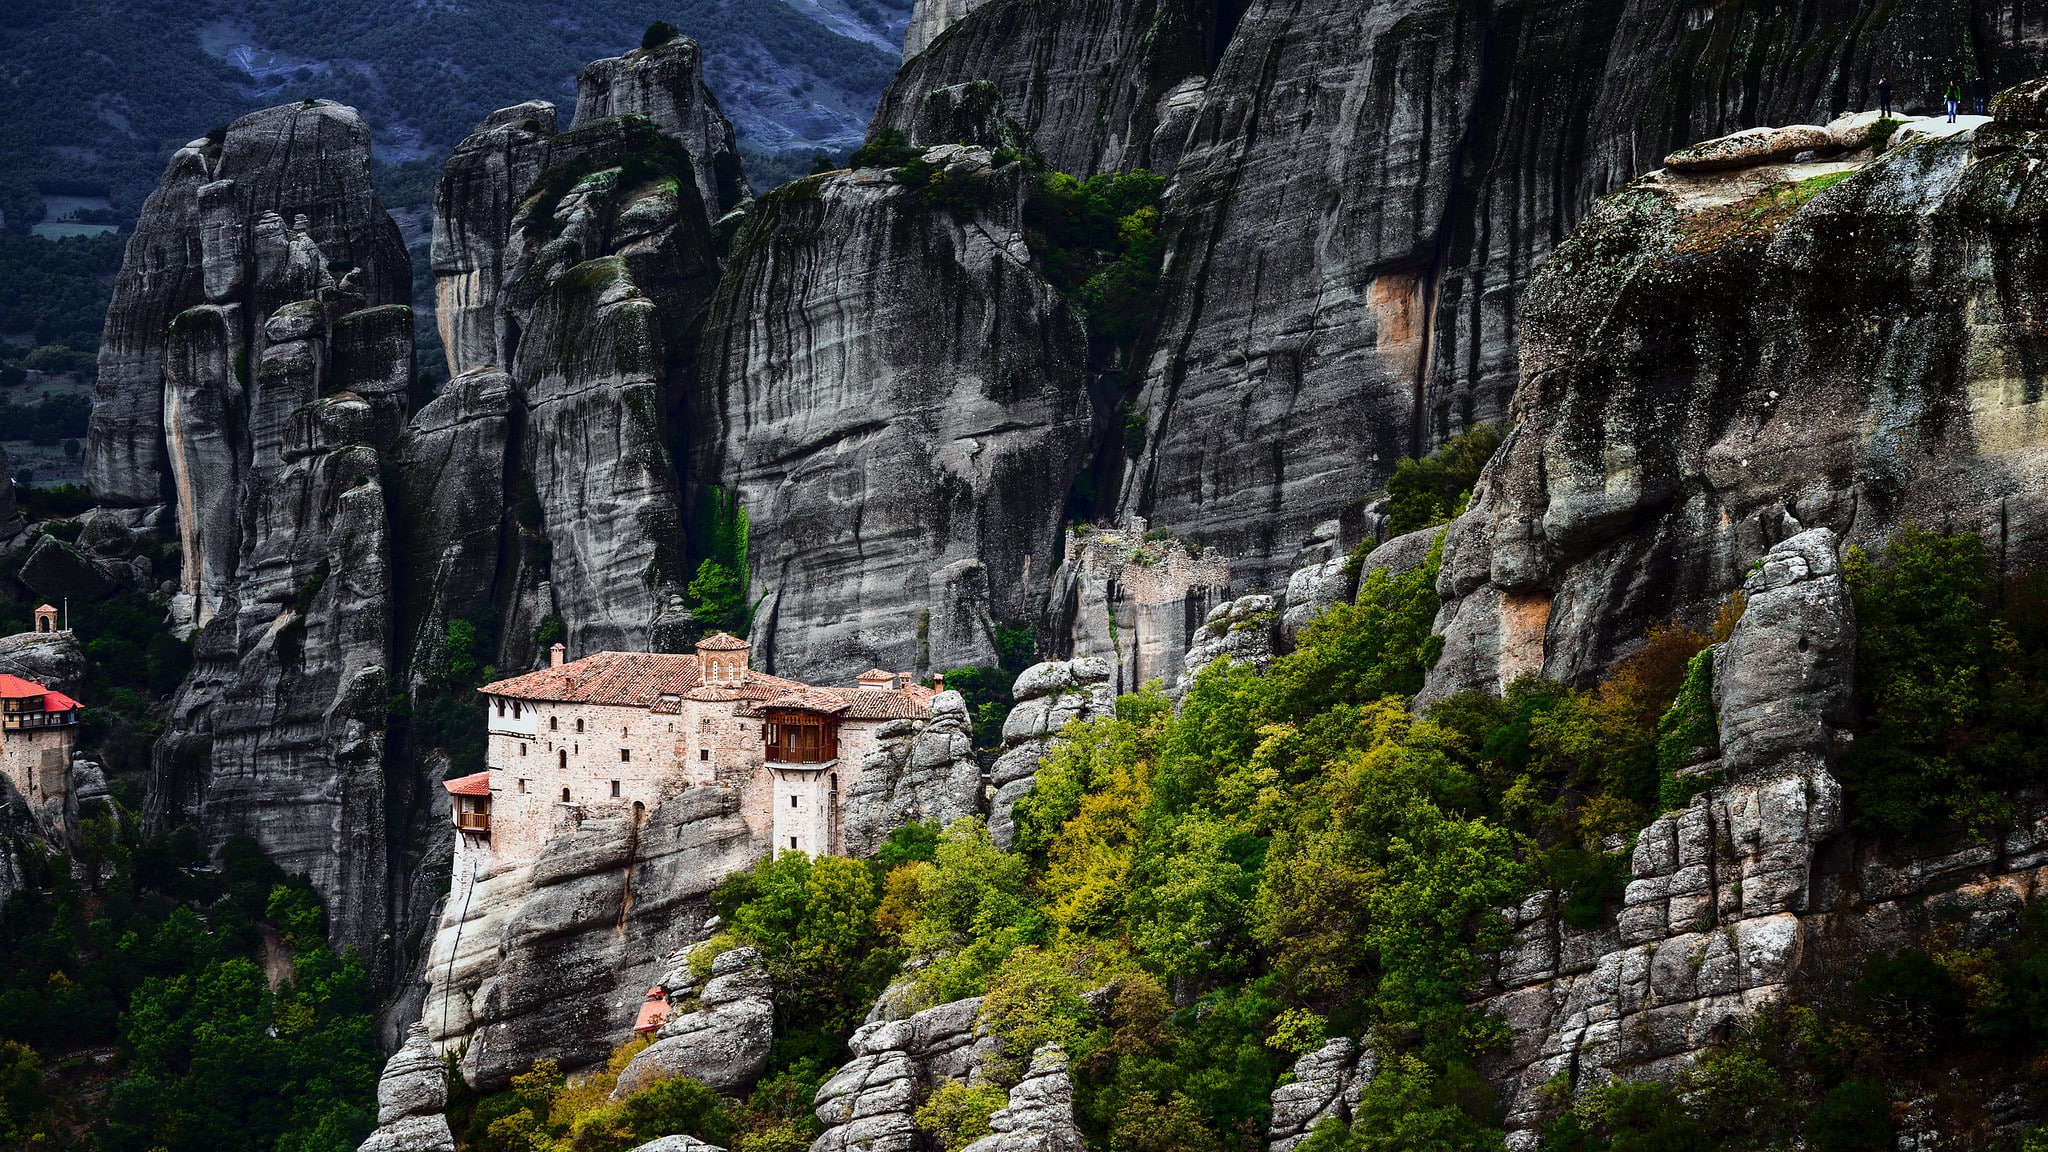 Greece, Meteora, house, trees, rocks, mountains